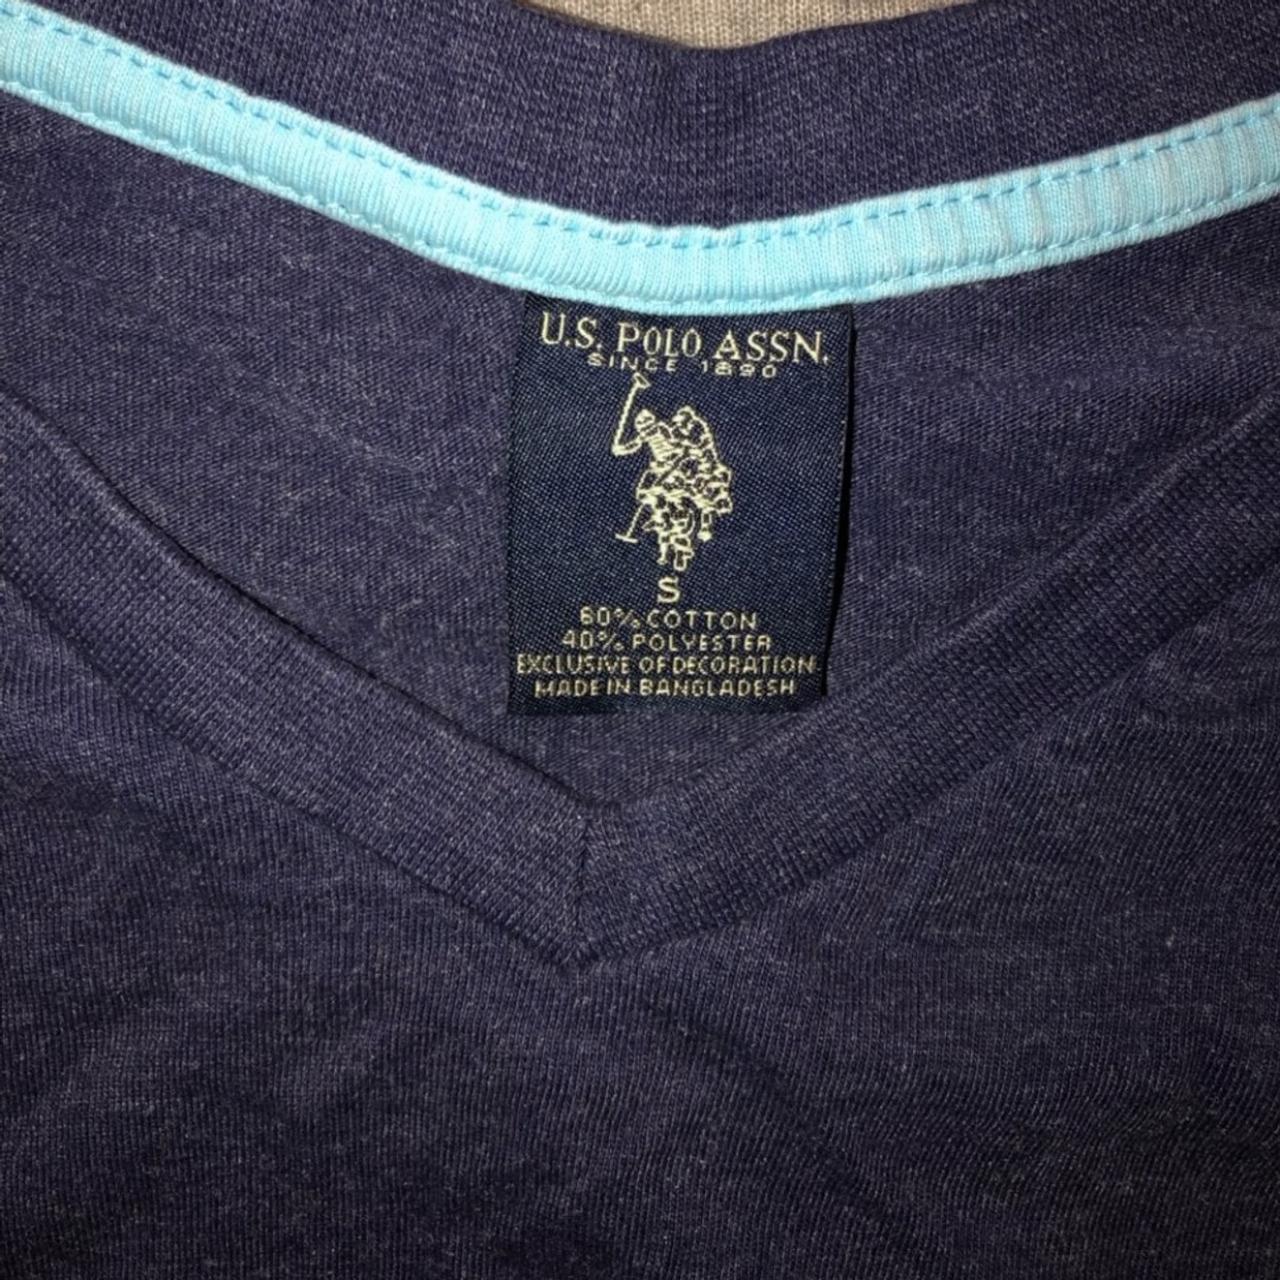 U.S. Polo Assn. Men's Polo-shirts (3)